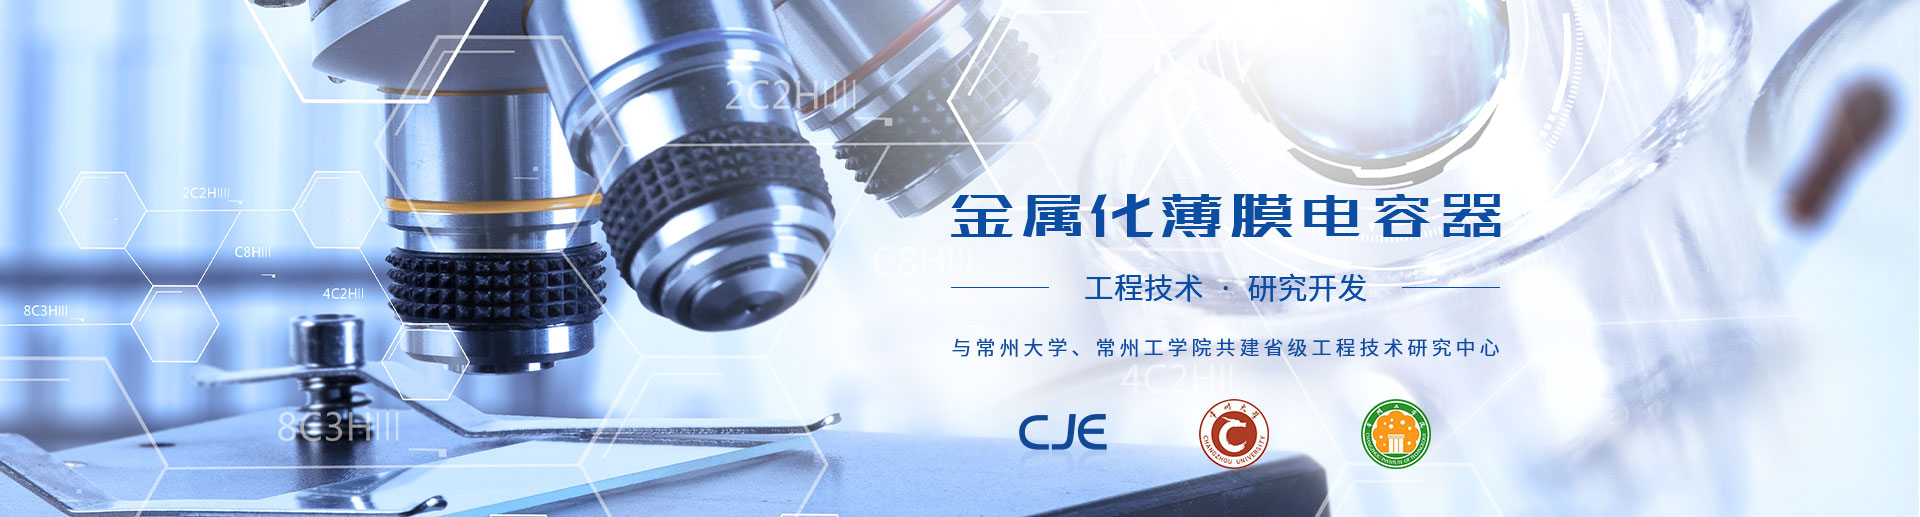 江苏省新能源金属化薄膜电容器工程技术研究中心